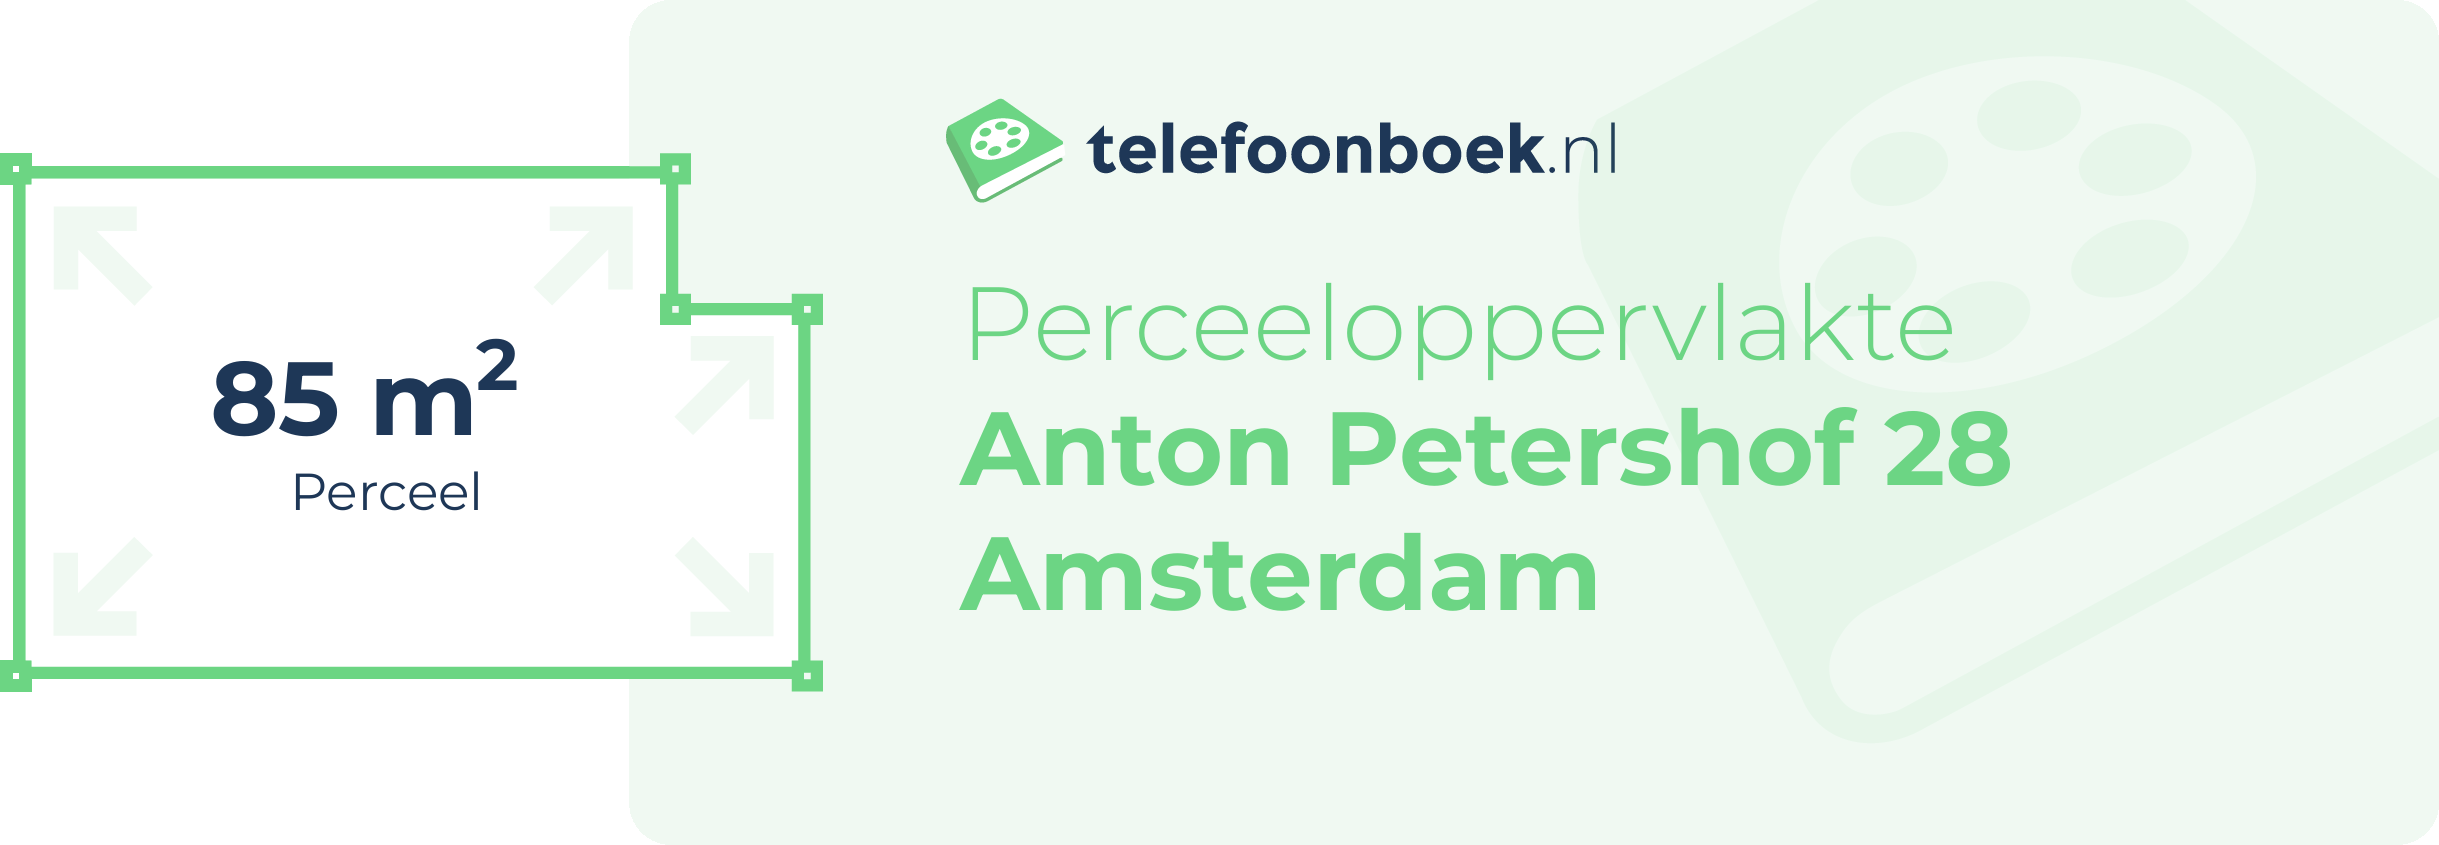 Perceeloppervlakte Anton Petershof 28 Amsterdam